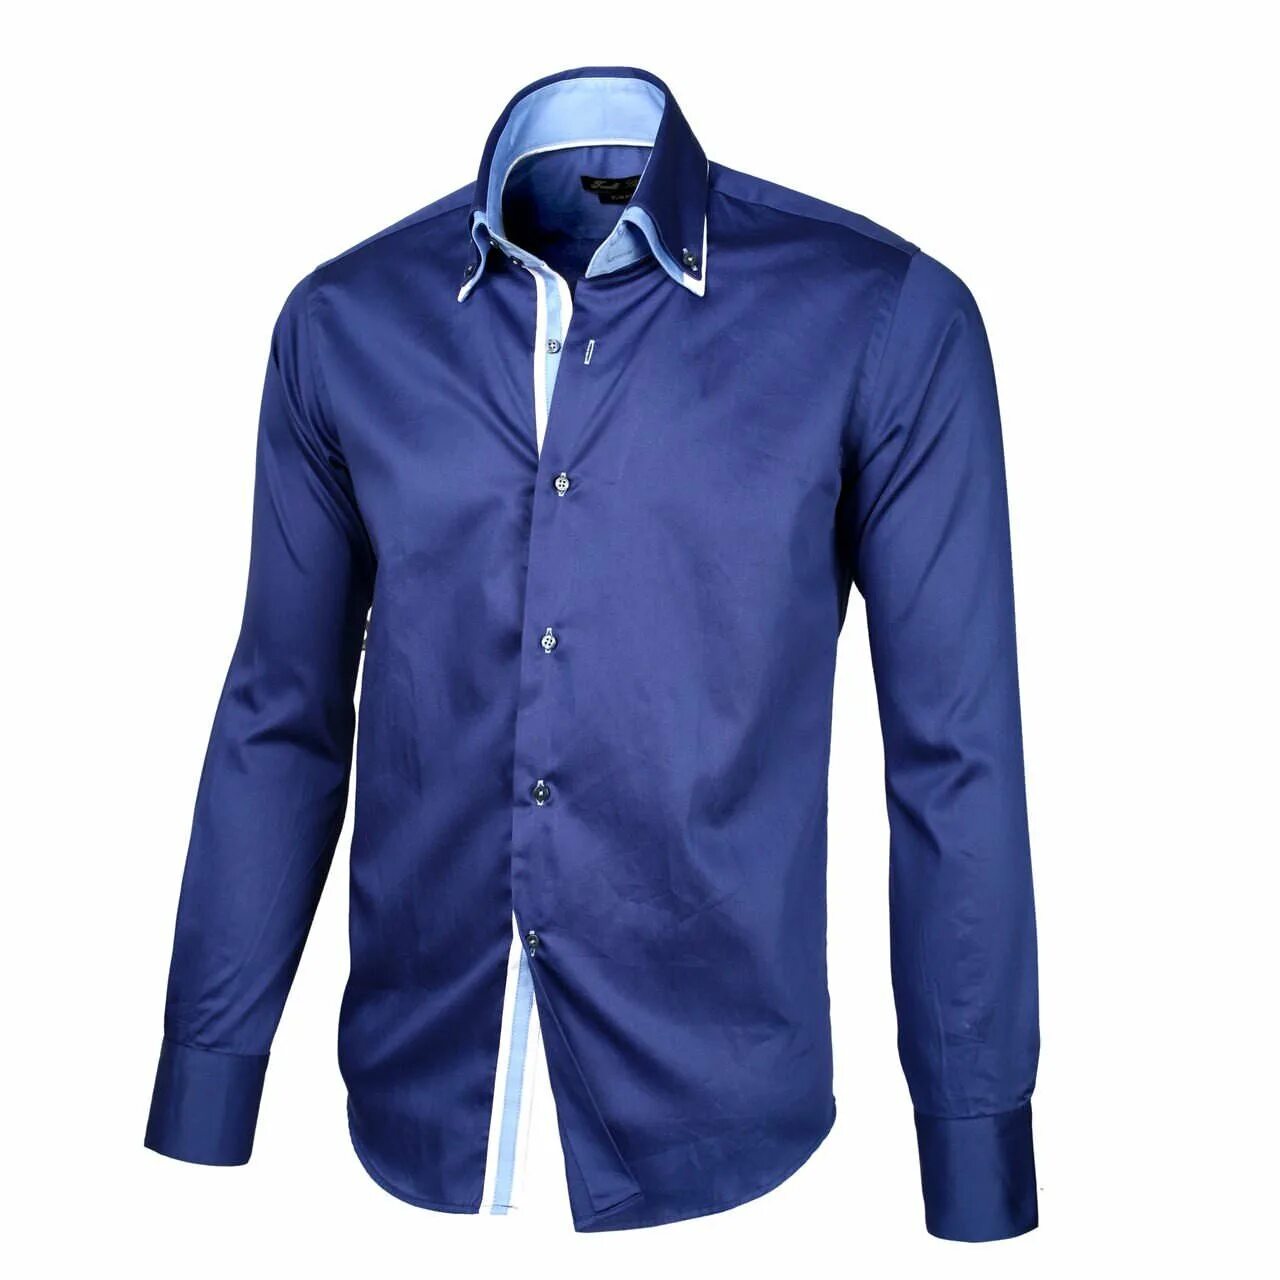 Рубашка мужская Mavi m021190-80692. Синяя рубашка. Синяя рубашка мужская. Красивые рубашки для мужчин. Купить рубашку новосибирск